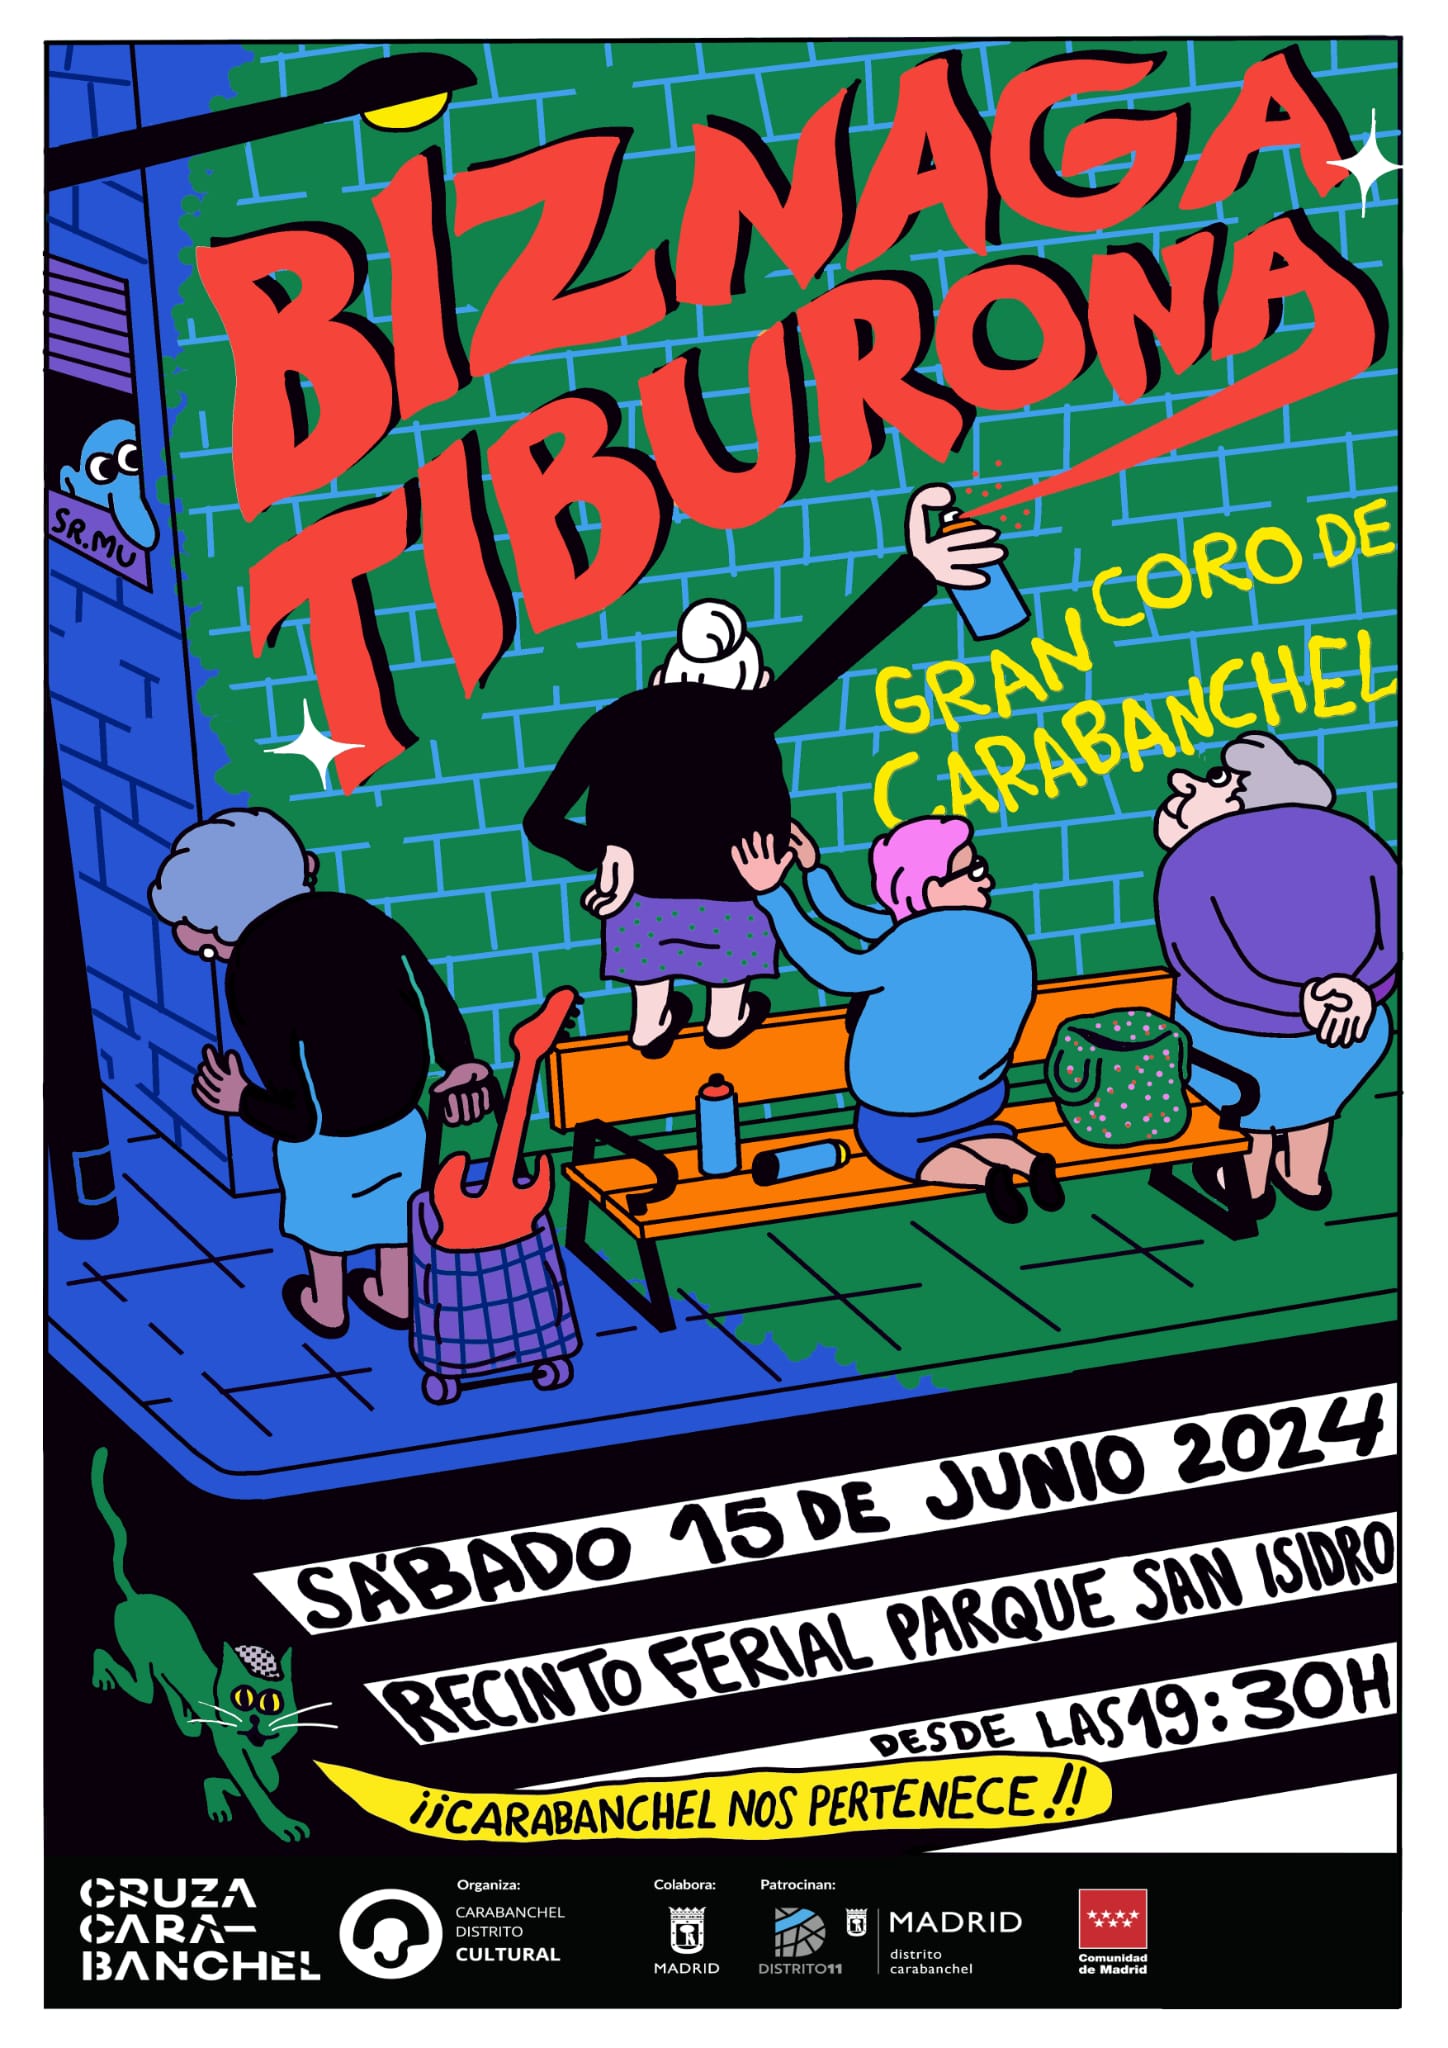 Concierto de Biznaga el 15 de junio en el Parque San Isidro de Carabanchel en Madrid